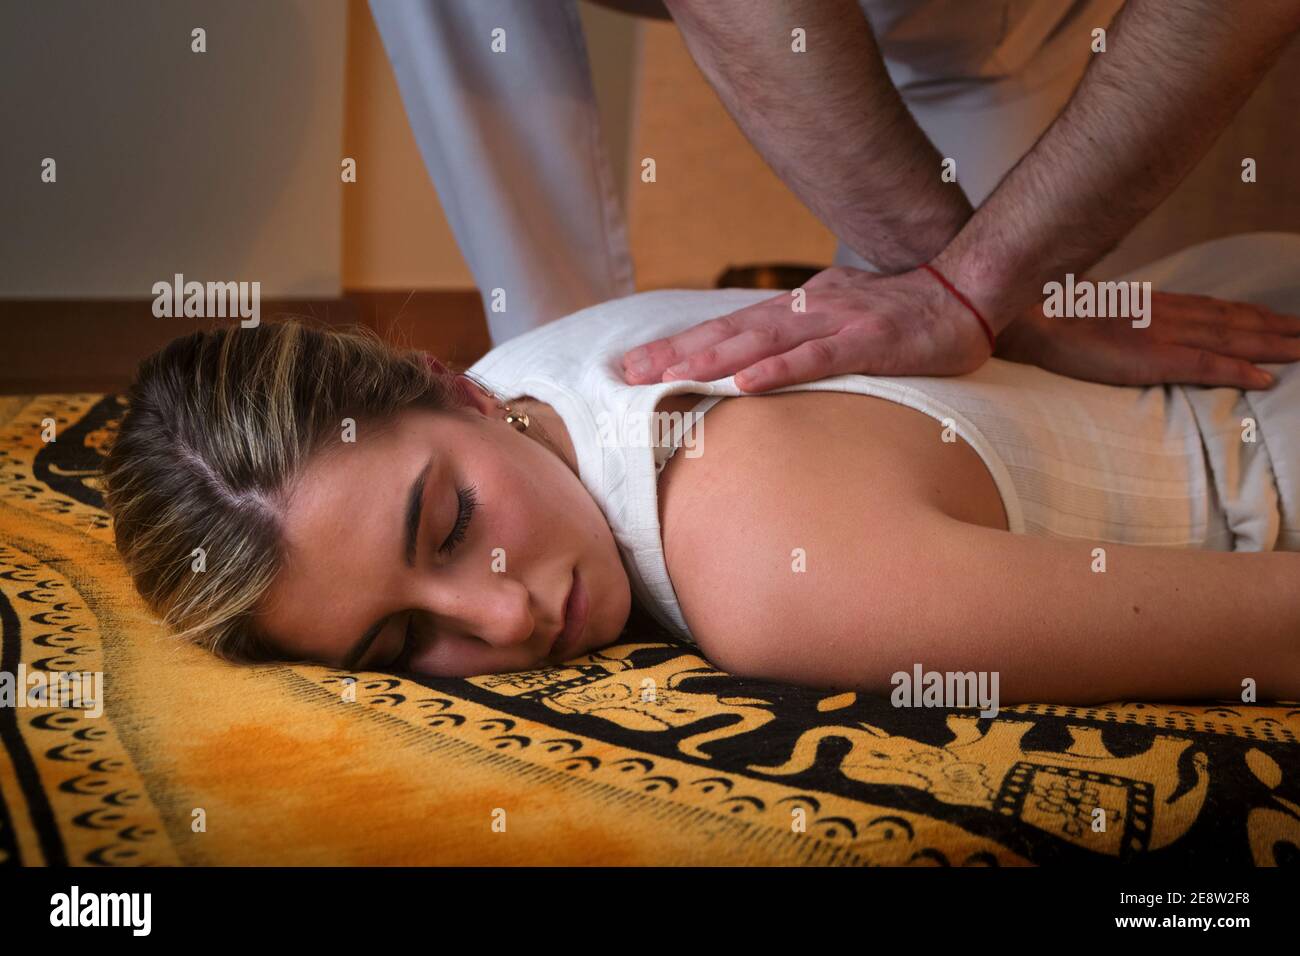 Bbw Asian Massage